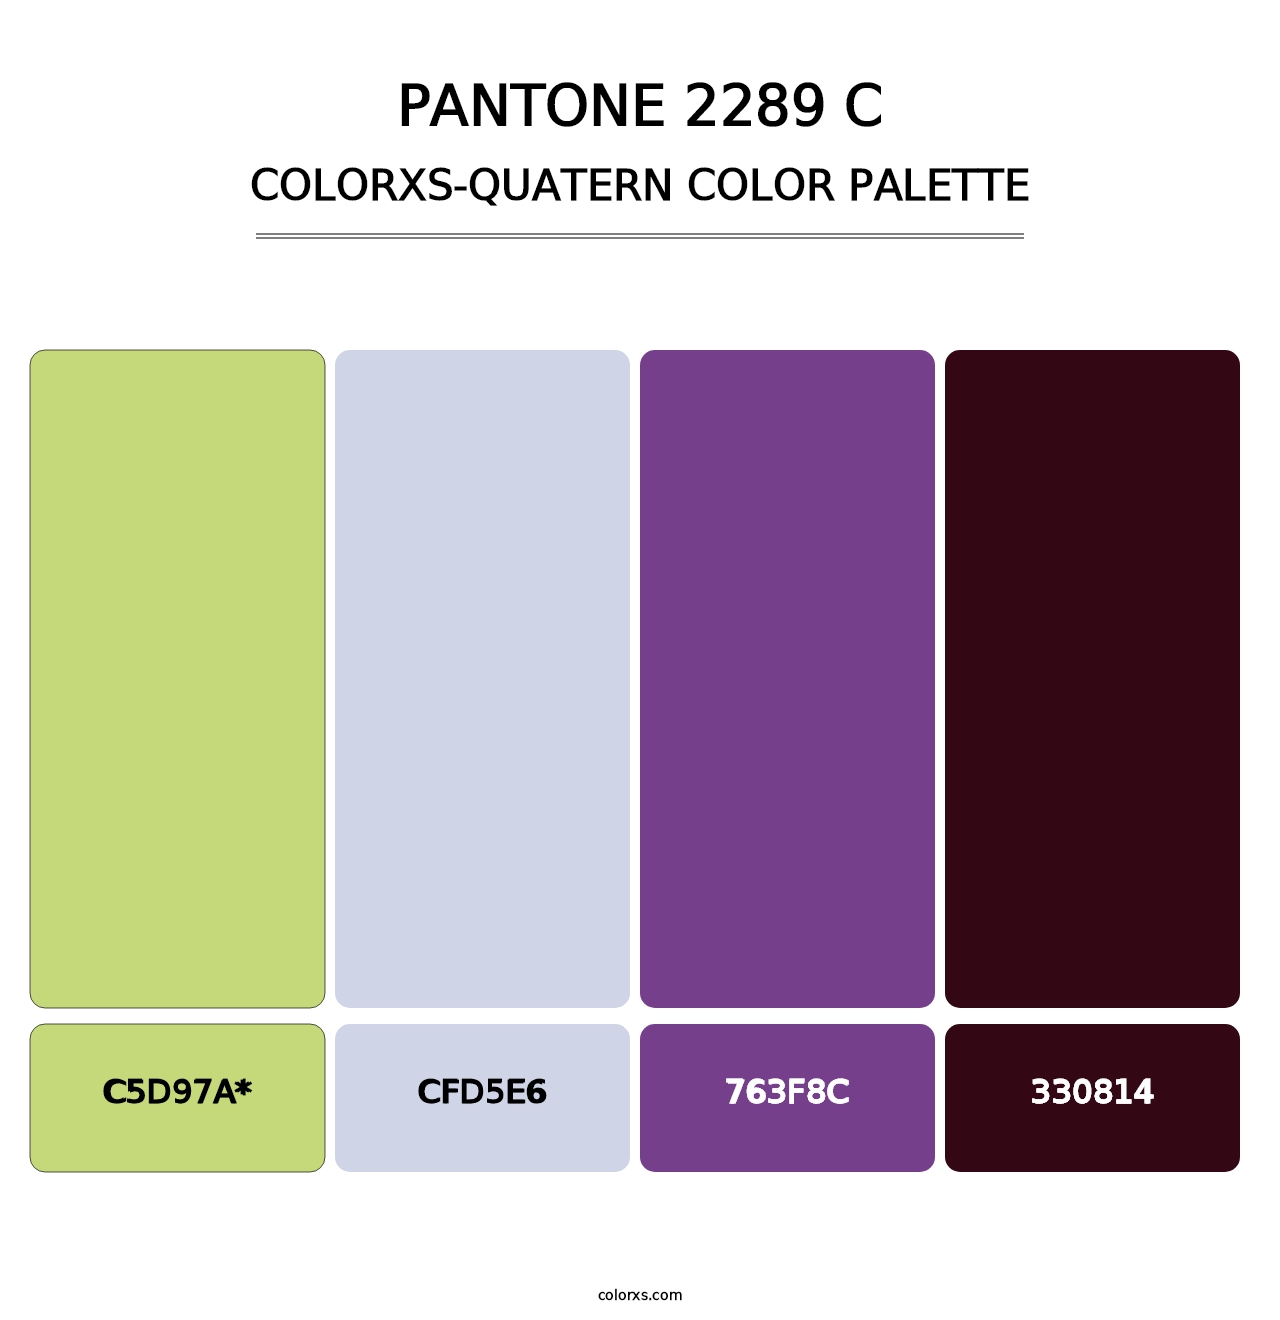 PANTONE 2289 C - Colorxs Quatern Palette